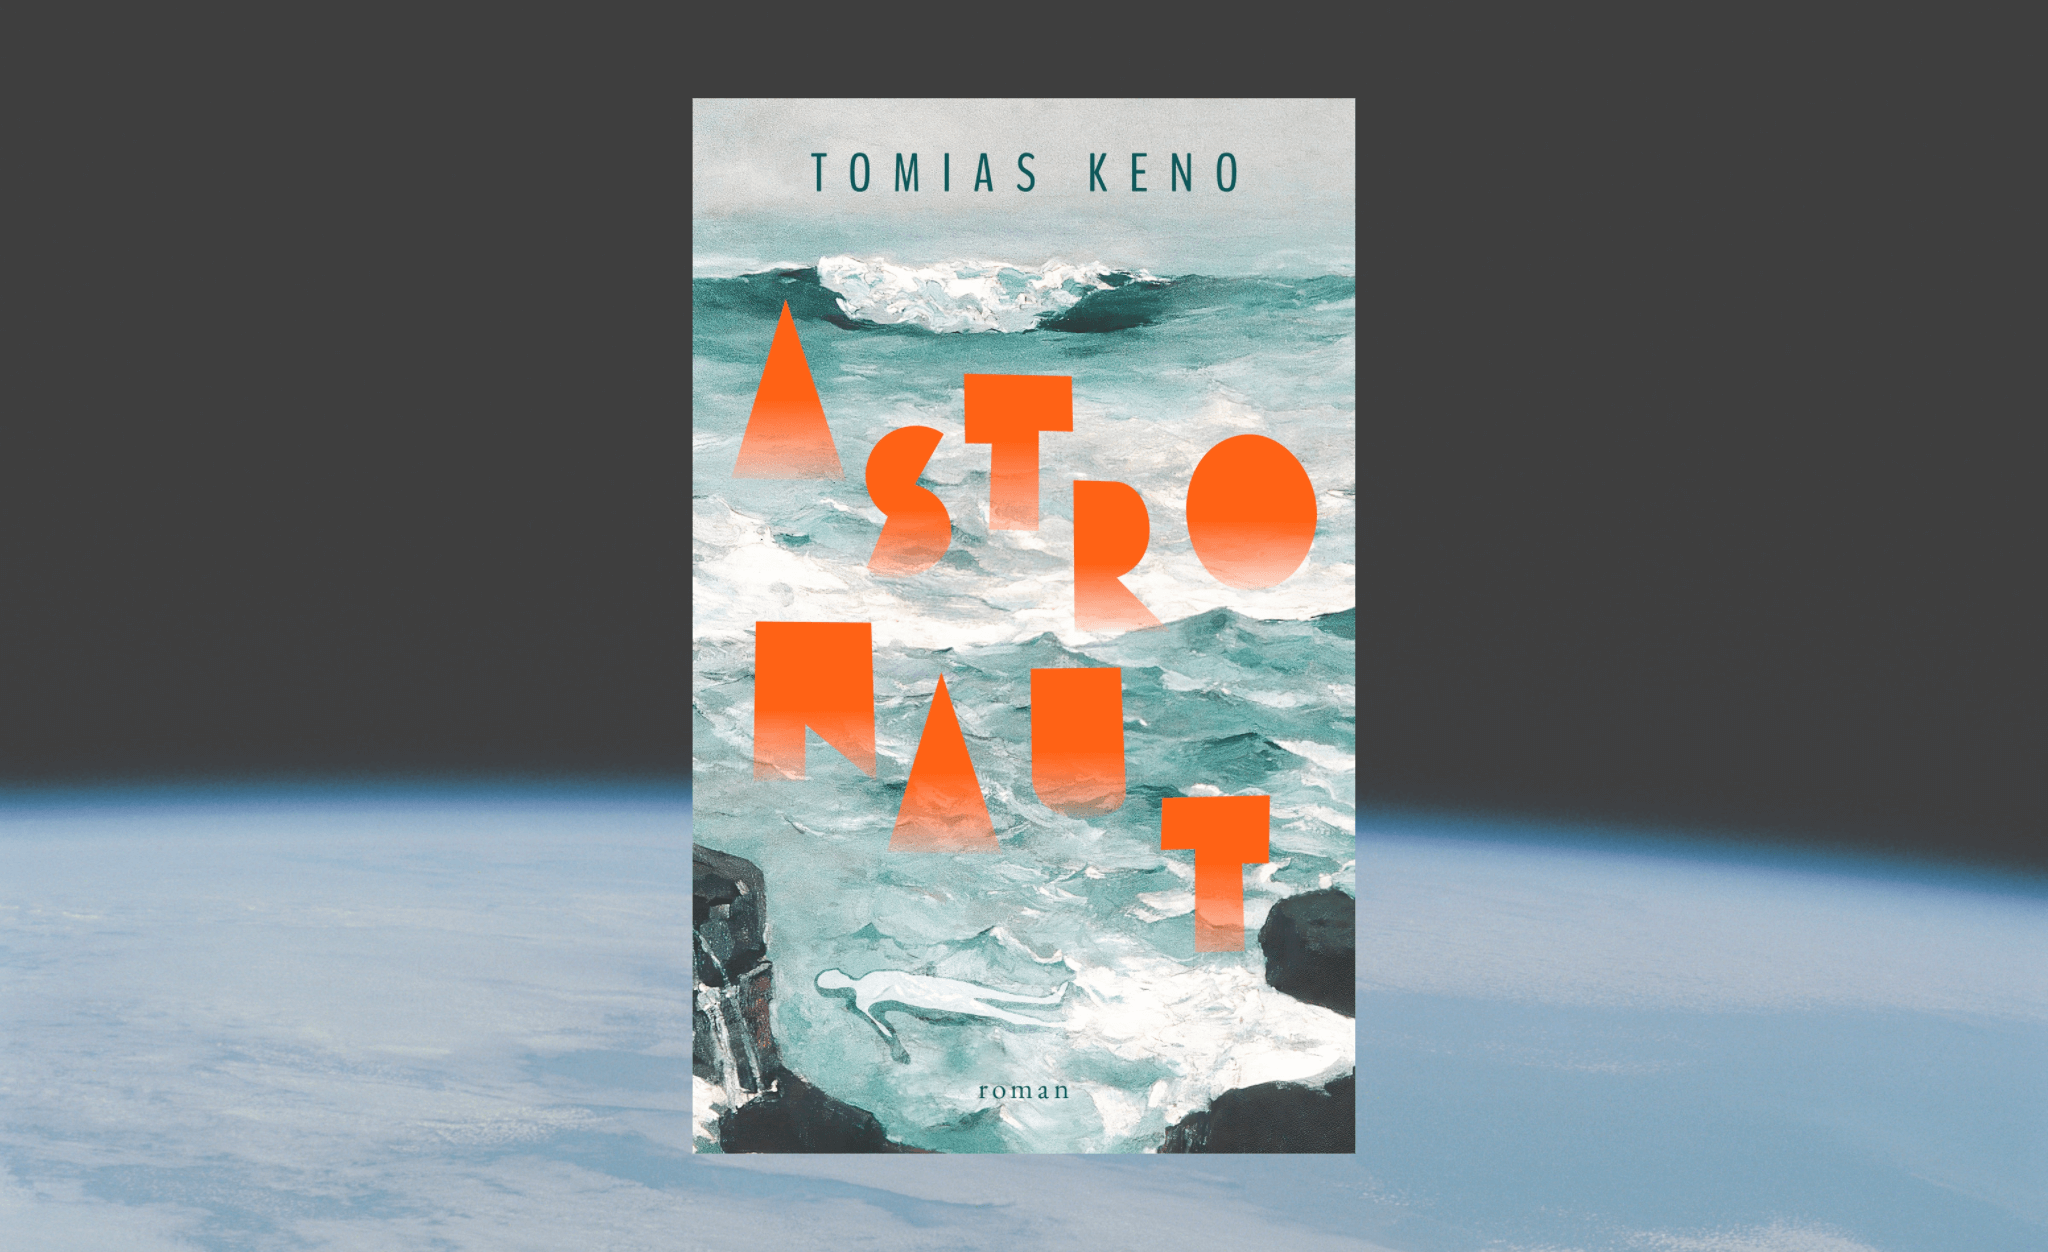 Astronaut Tomias Keno